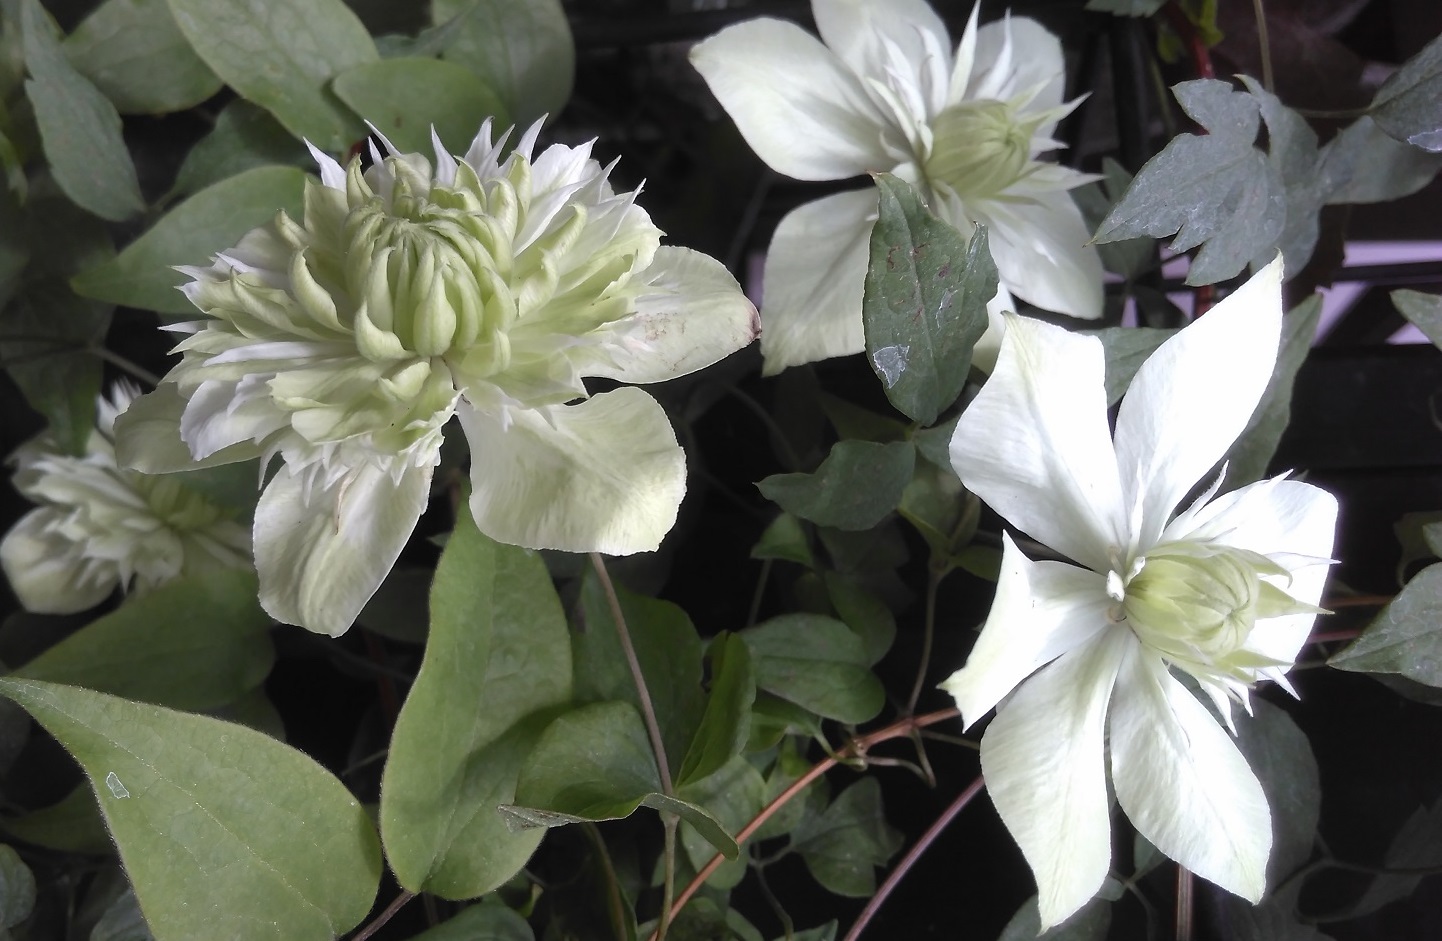 梅雨時のジメジメした空気を吹き飛ばす白い花たち その3 梅雨に咲く白花クレマチス3種 My Precious Garden 大好きな植物とすごす マイプレシャスガーデン